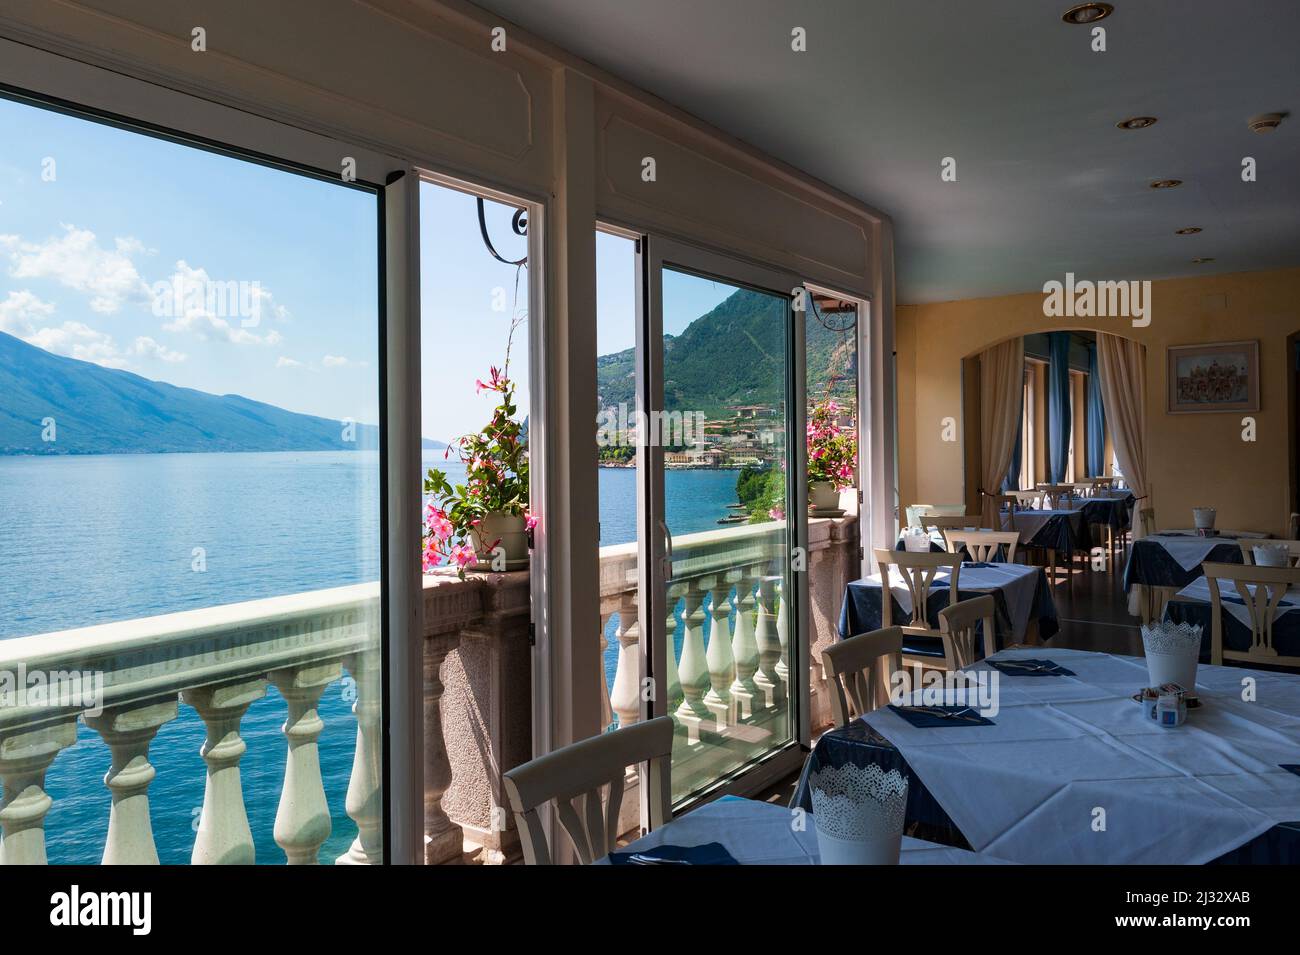 Le lac de Limone sul Garda d'une salle de restaurant, une destination touristique très appréciée par les touristes du monde entier. Brescia. Lombardie. Italie Banque D'Images